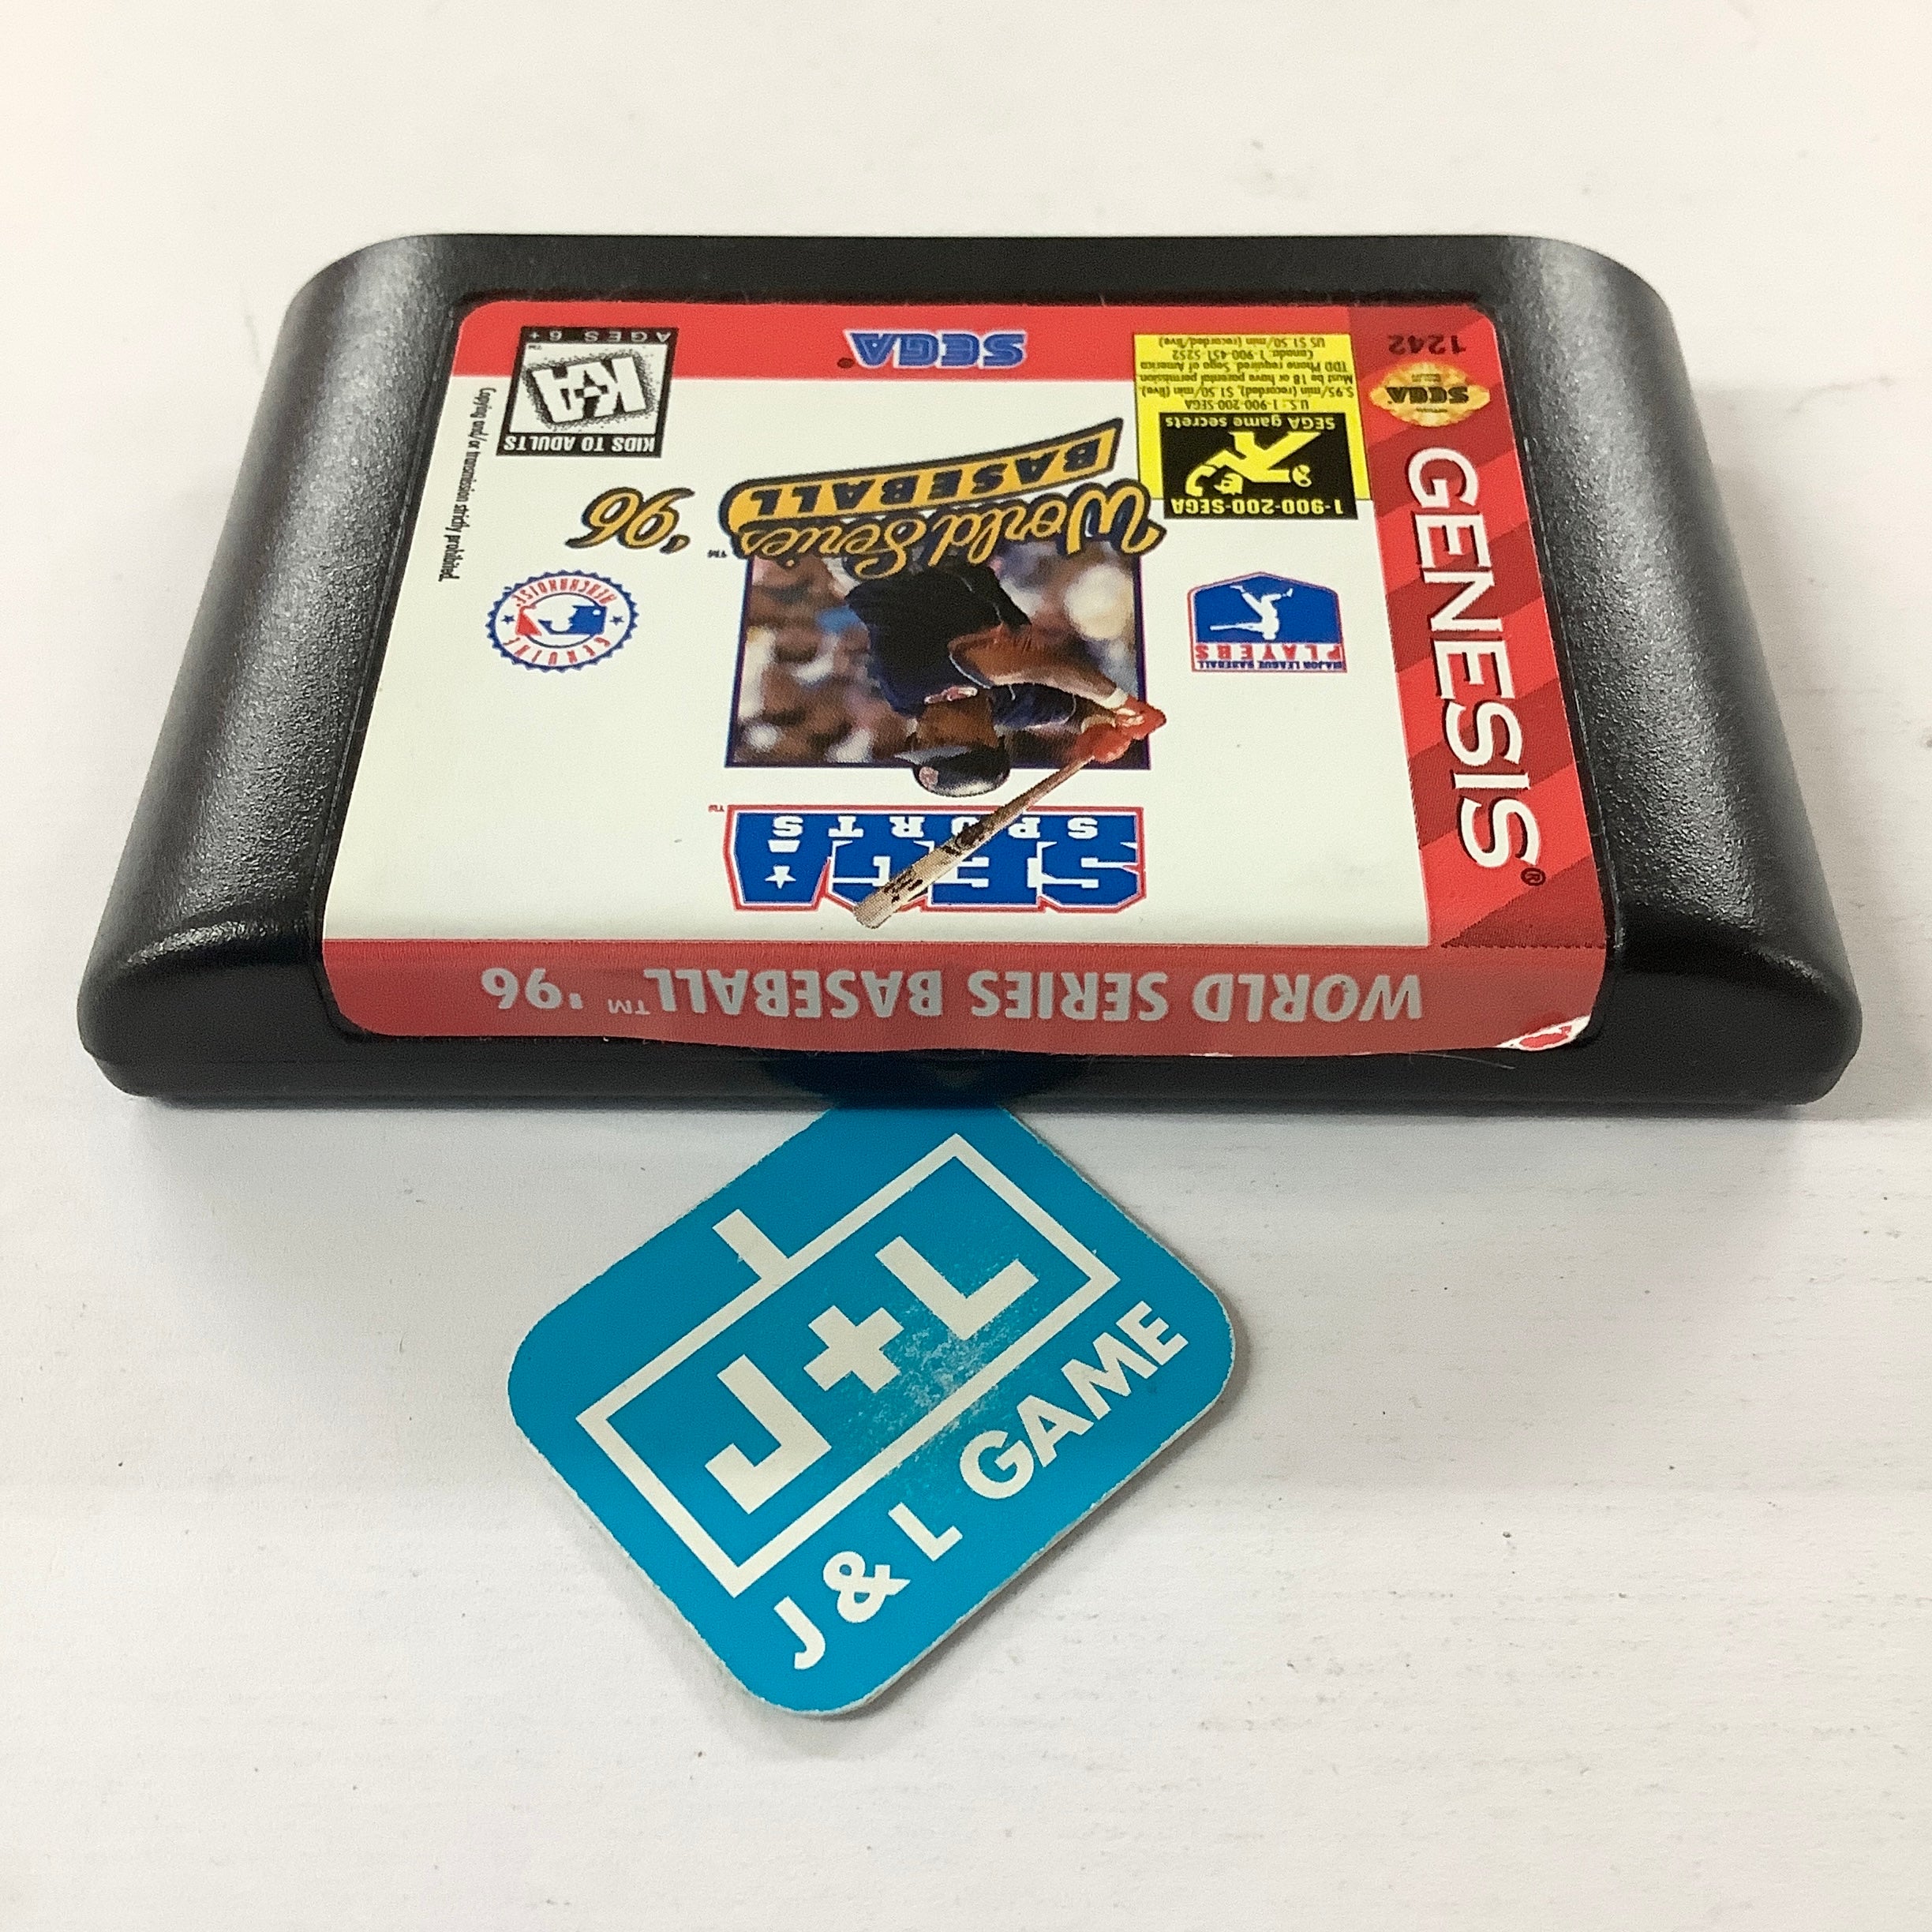 World Series Baseball '96 - (SG) SEGA Genesis [Pre-Owned] Video Games Sega   